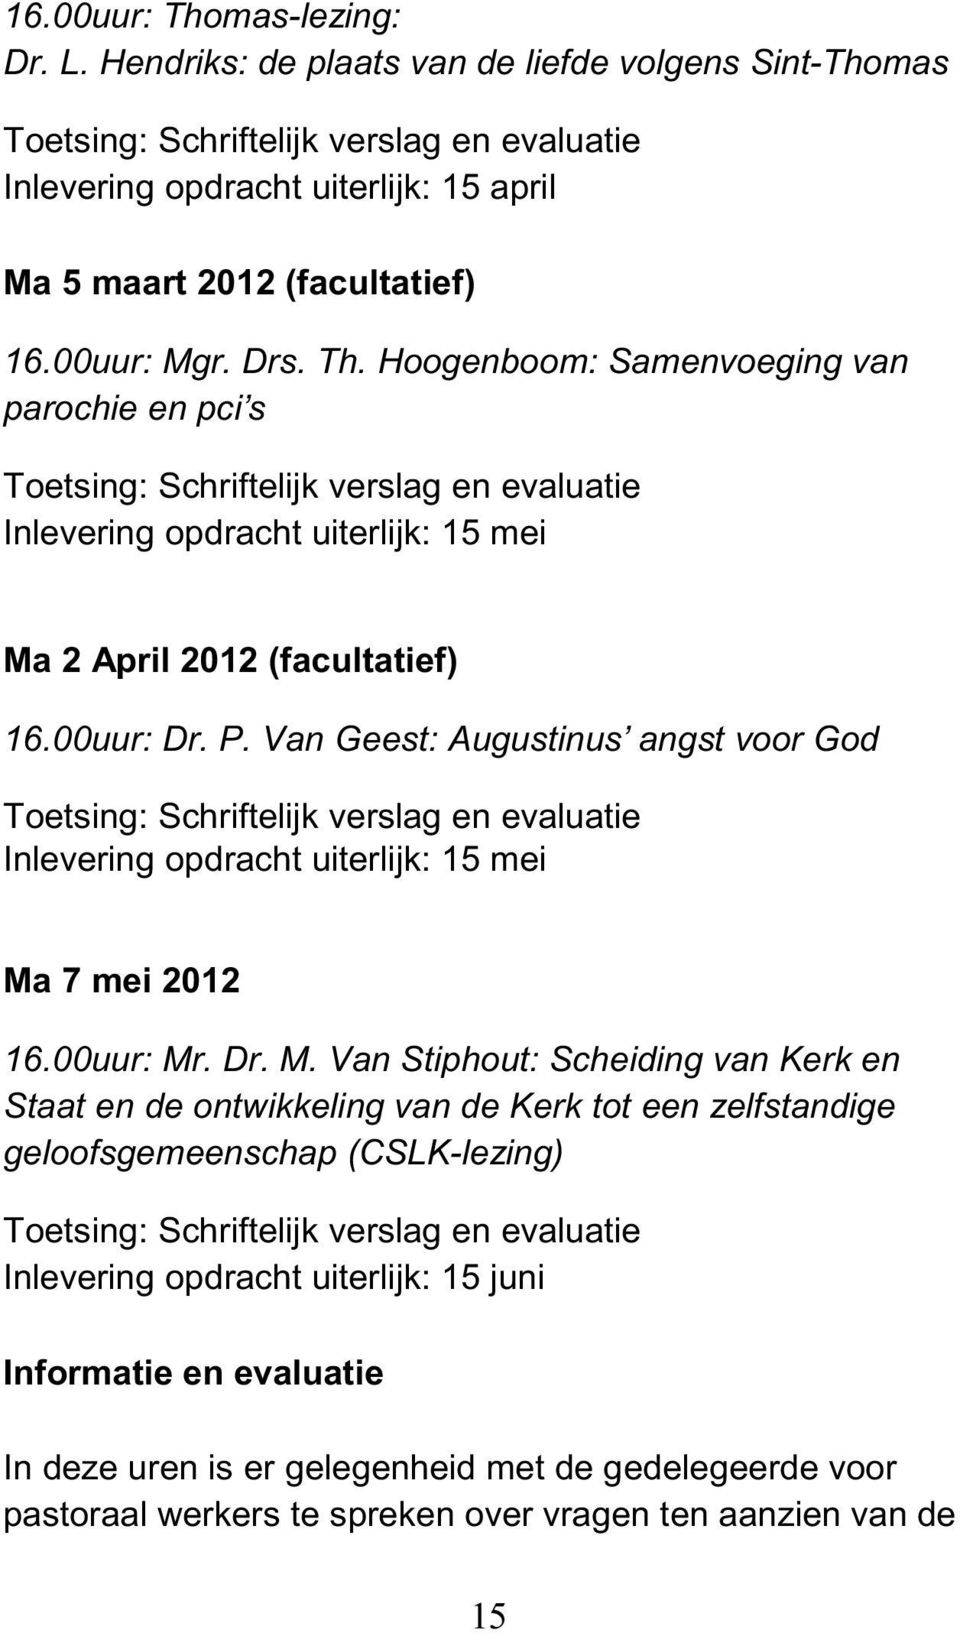 Hoogenboom: Samenvoeging van parochie en pci s Toetsing: Schriftelijk verslag en evaluatie Inlevering opdracht uiterlijk: 15 mei Ma 2 April 2012 (facultatief) 16.00uur: Dr. P.